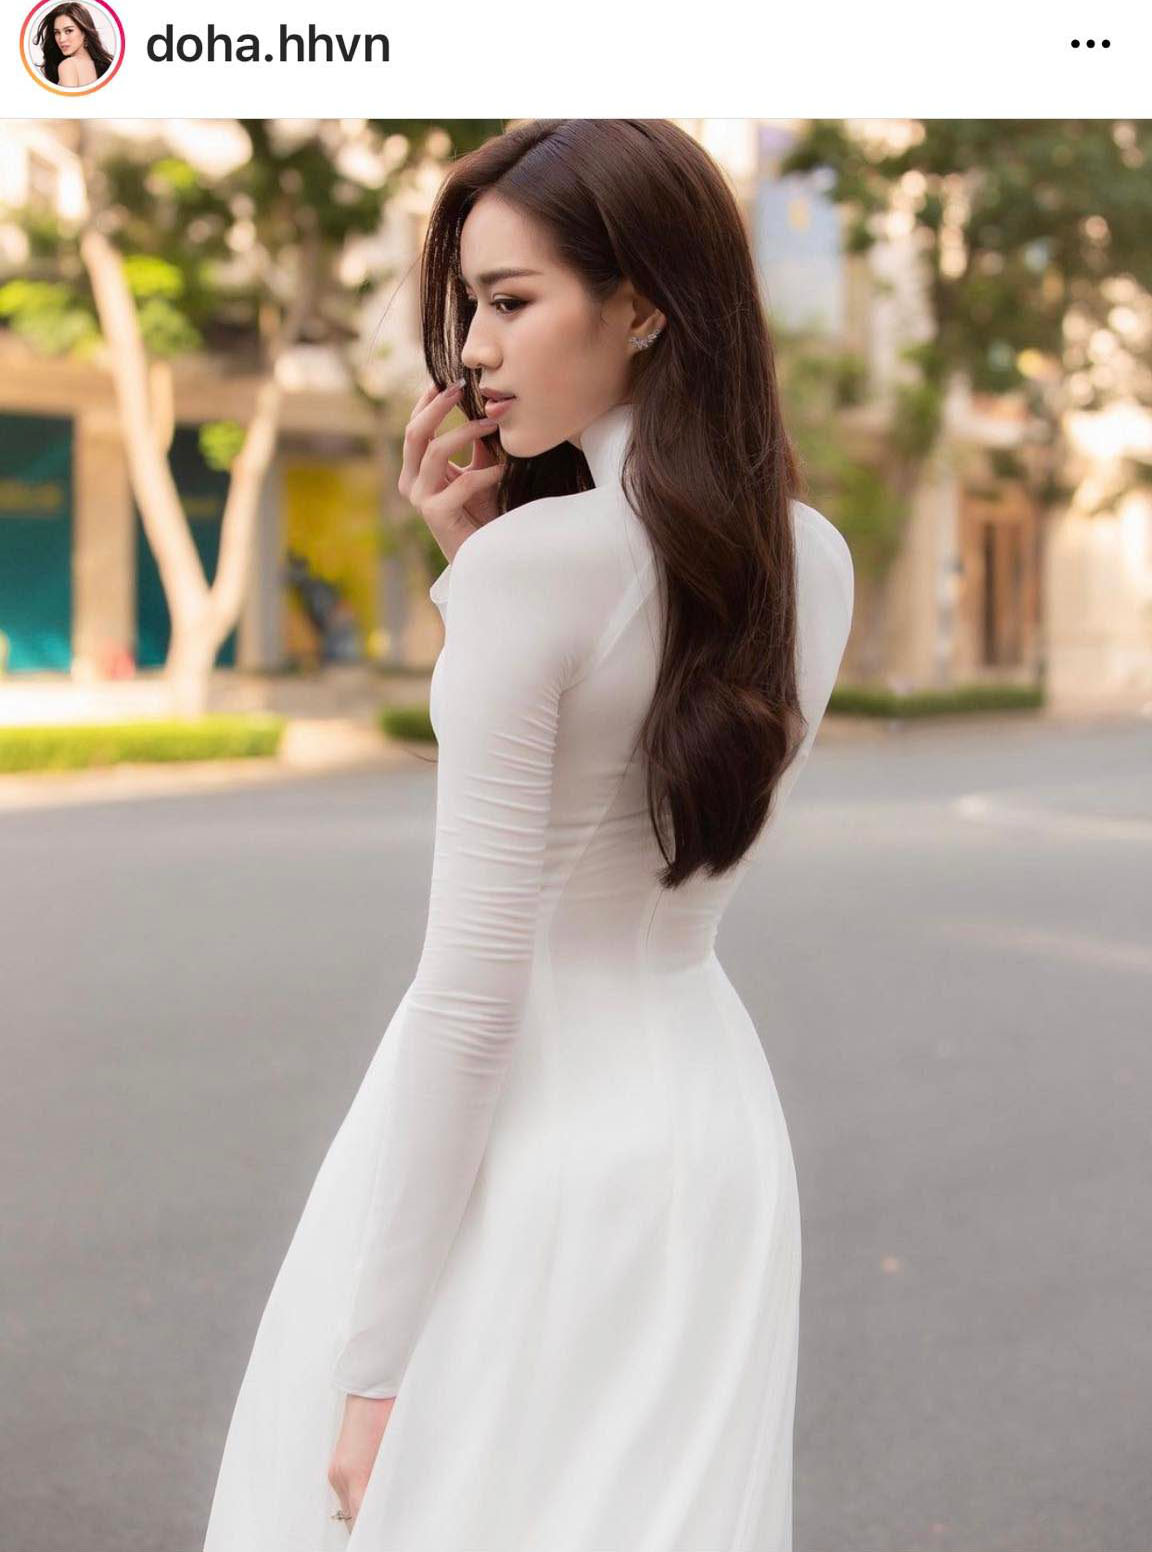 Sau lần mắc lỗi nội y, hoa hậu Đỗ Thị Hà mặc áo dài trắng mỏng sexy mà vẫn như nàng thơ - 3